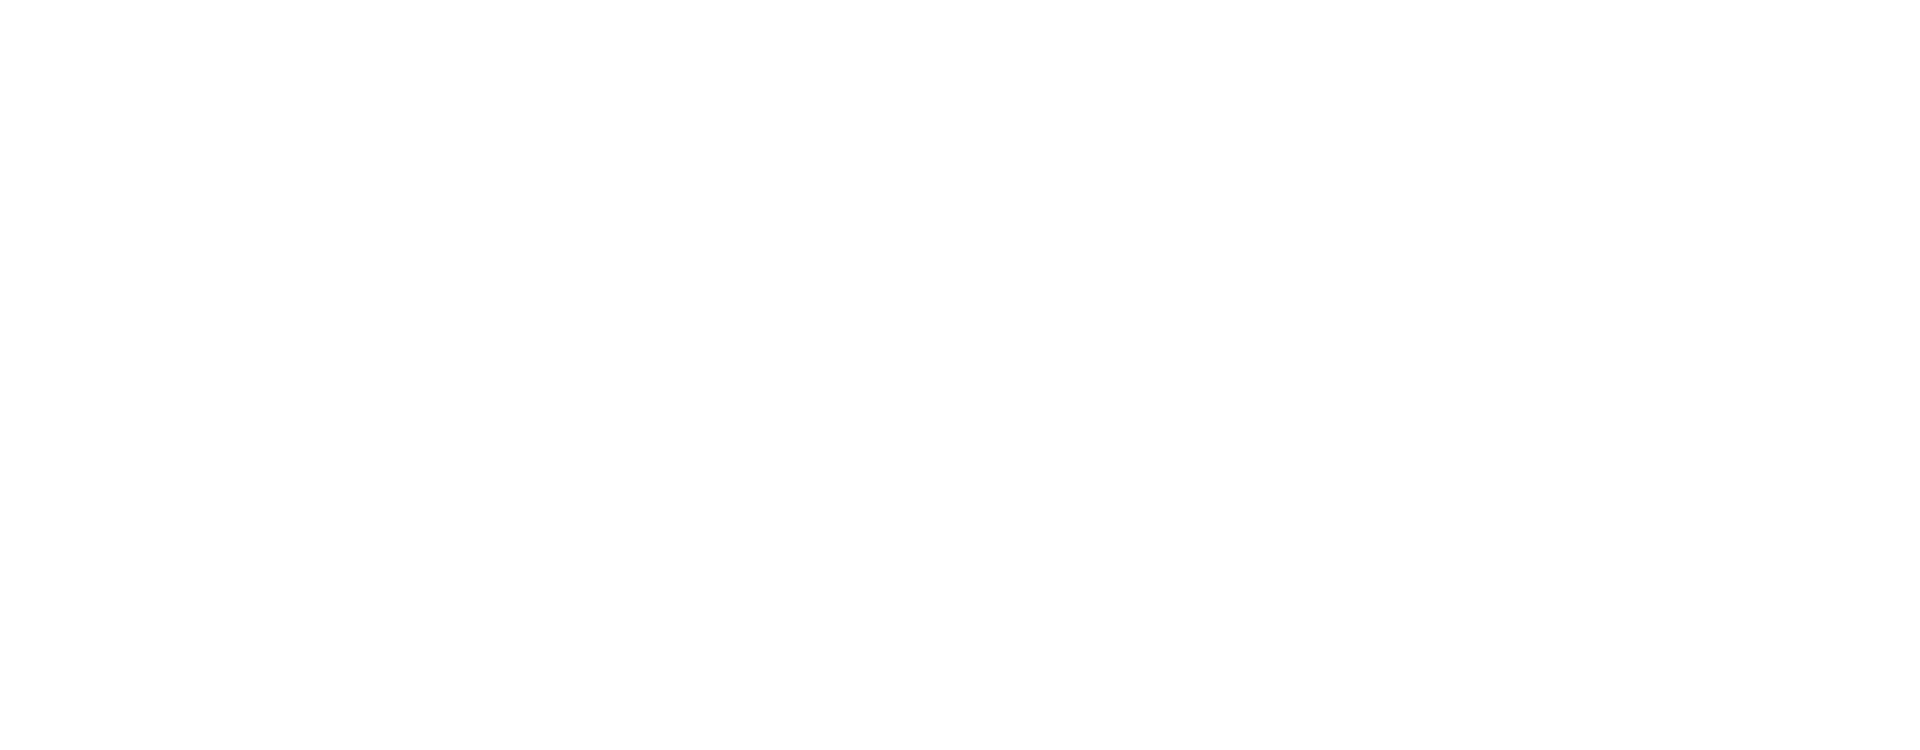 Titel: mobile church